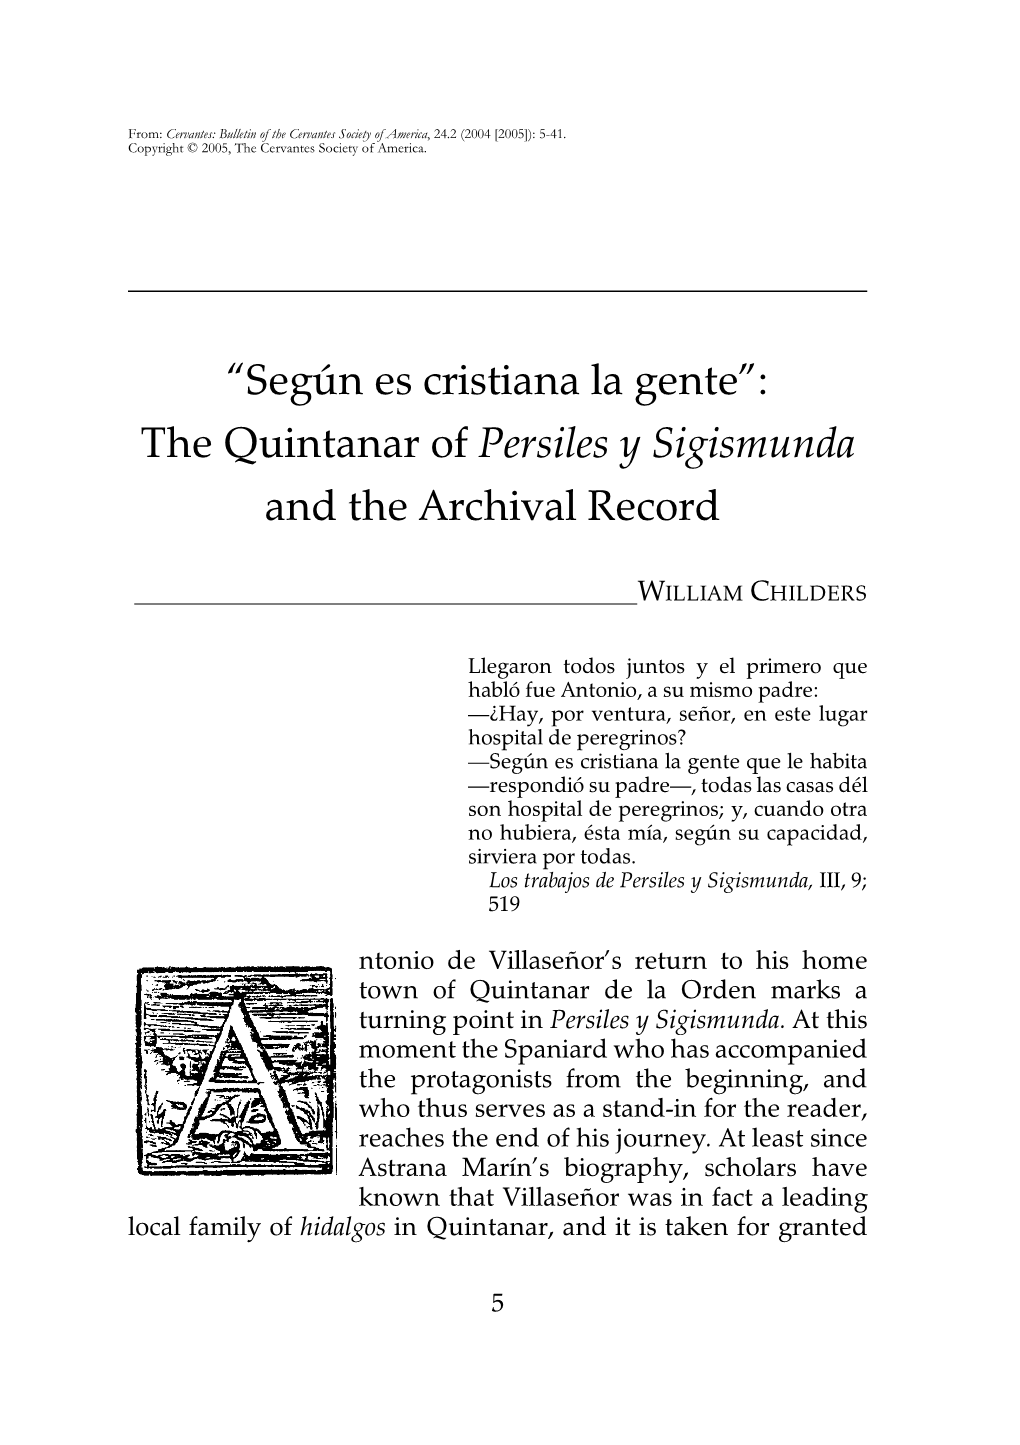 Según Es Cristiana La Gente”: the Quintanar of Persiles Y Sigismunda and the Archival Record